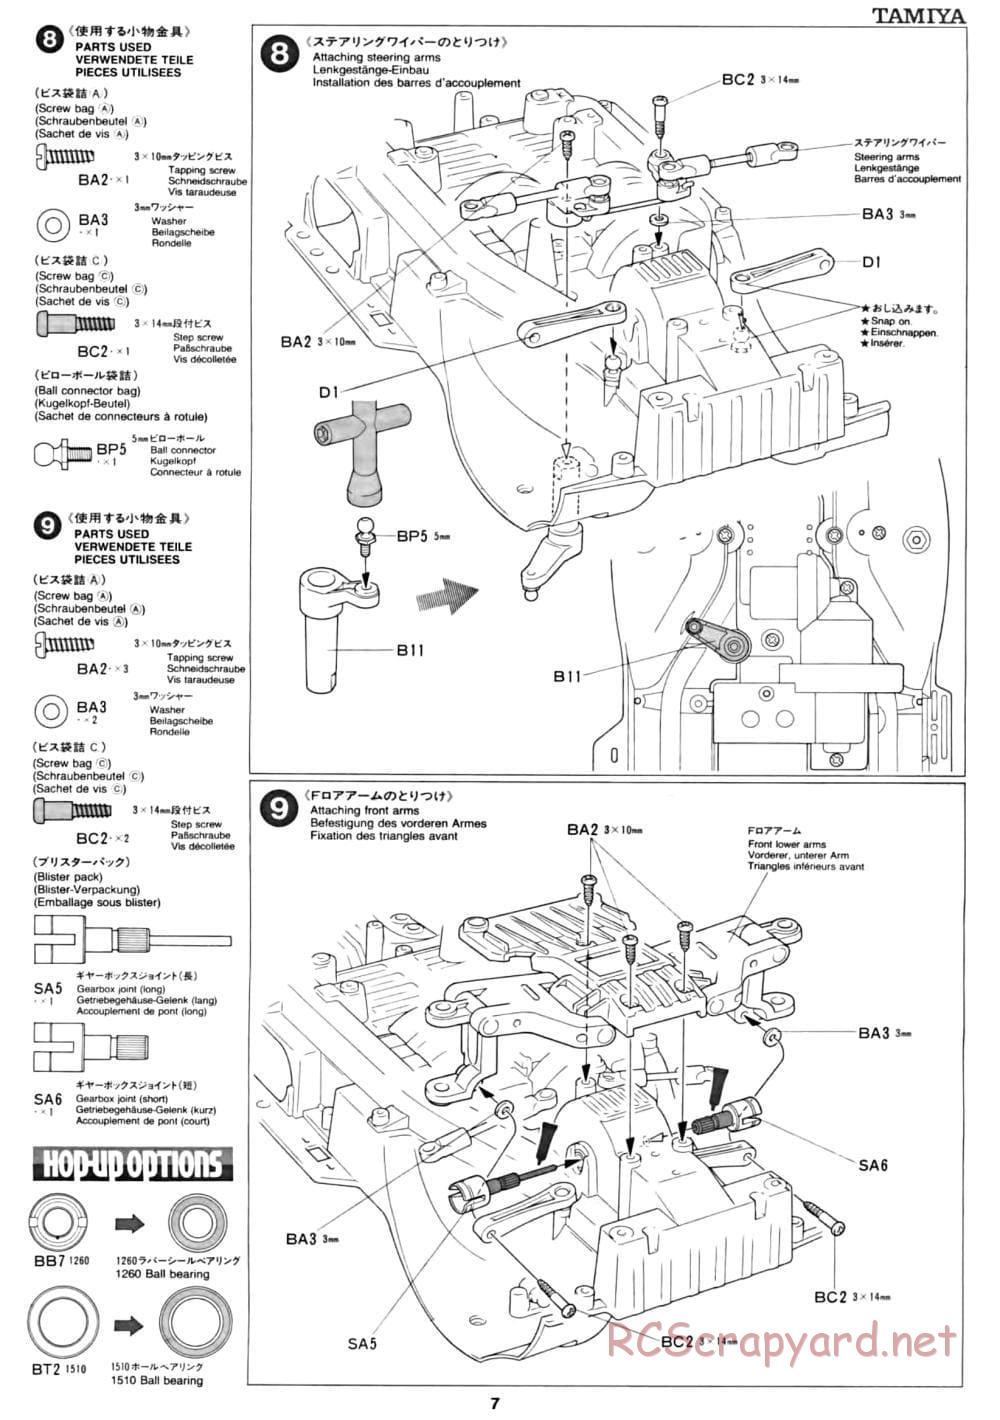 Tamiya - CC-01 Chassis - Manual - Page 7